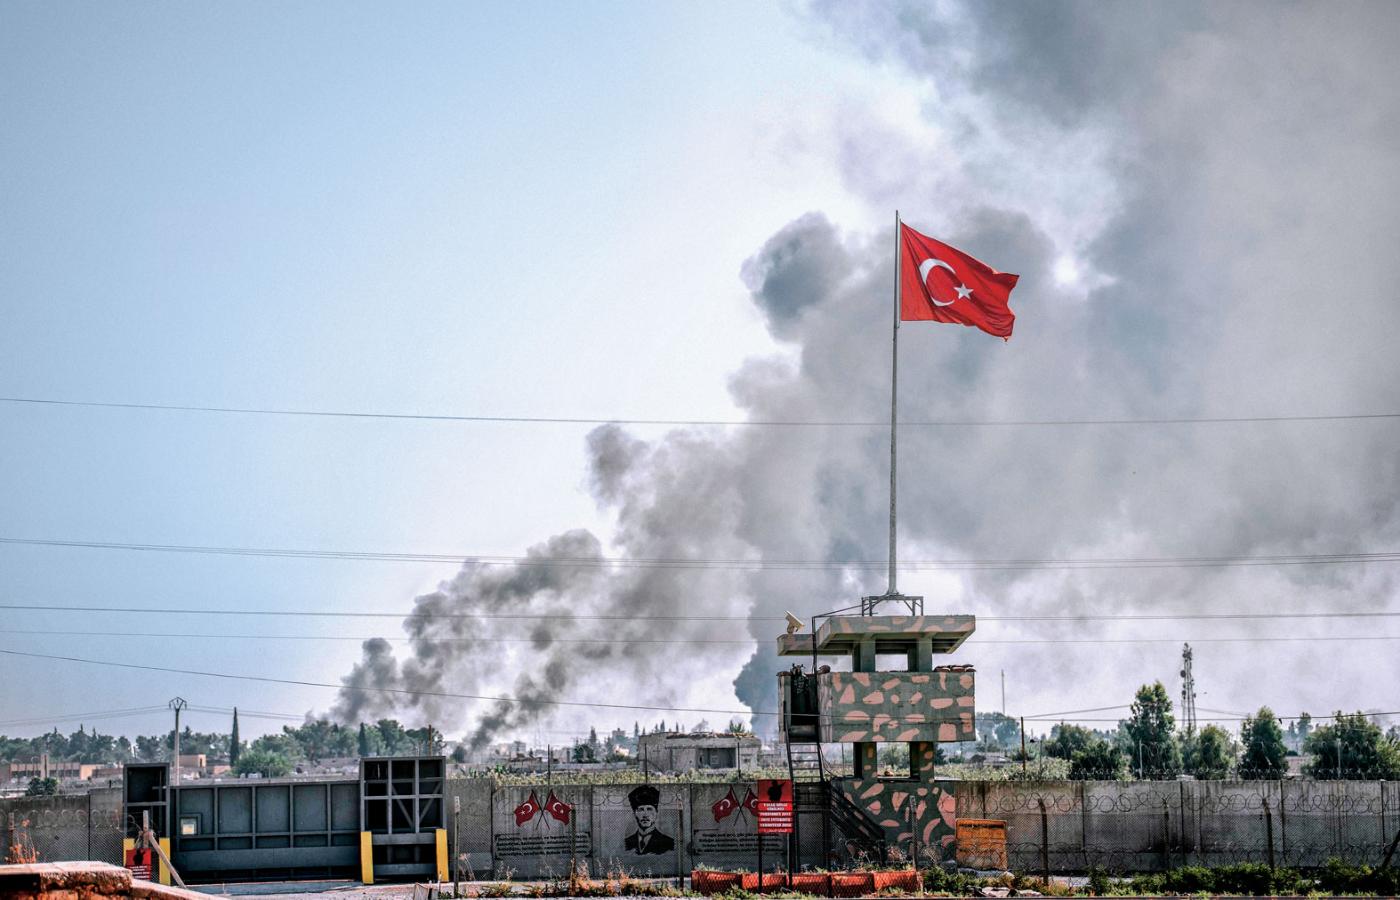 Akçakale – turecka granica z Syrią. Dymy w syryjskim miasteczku Tal Abyad.